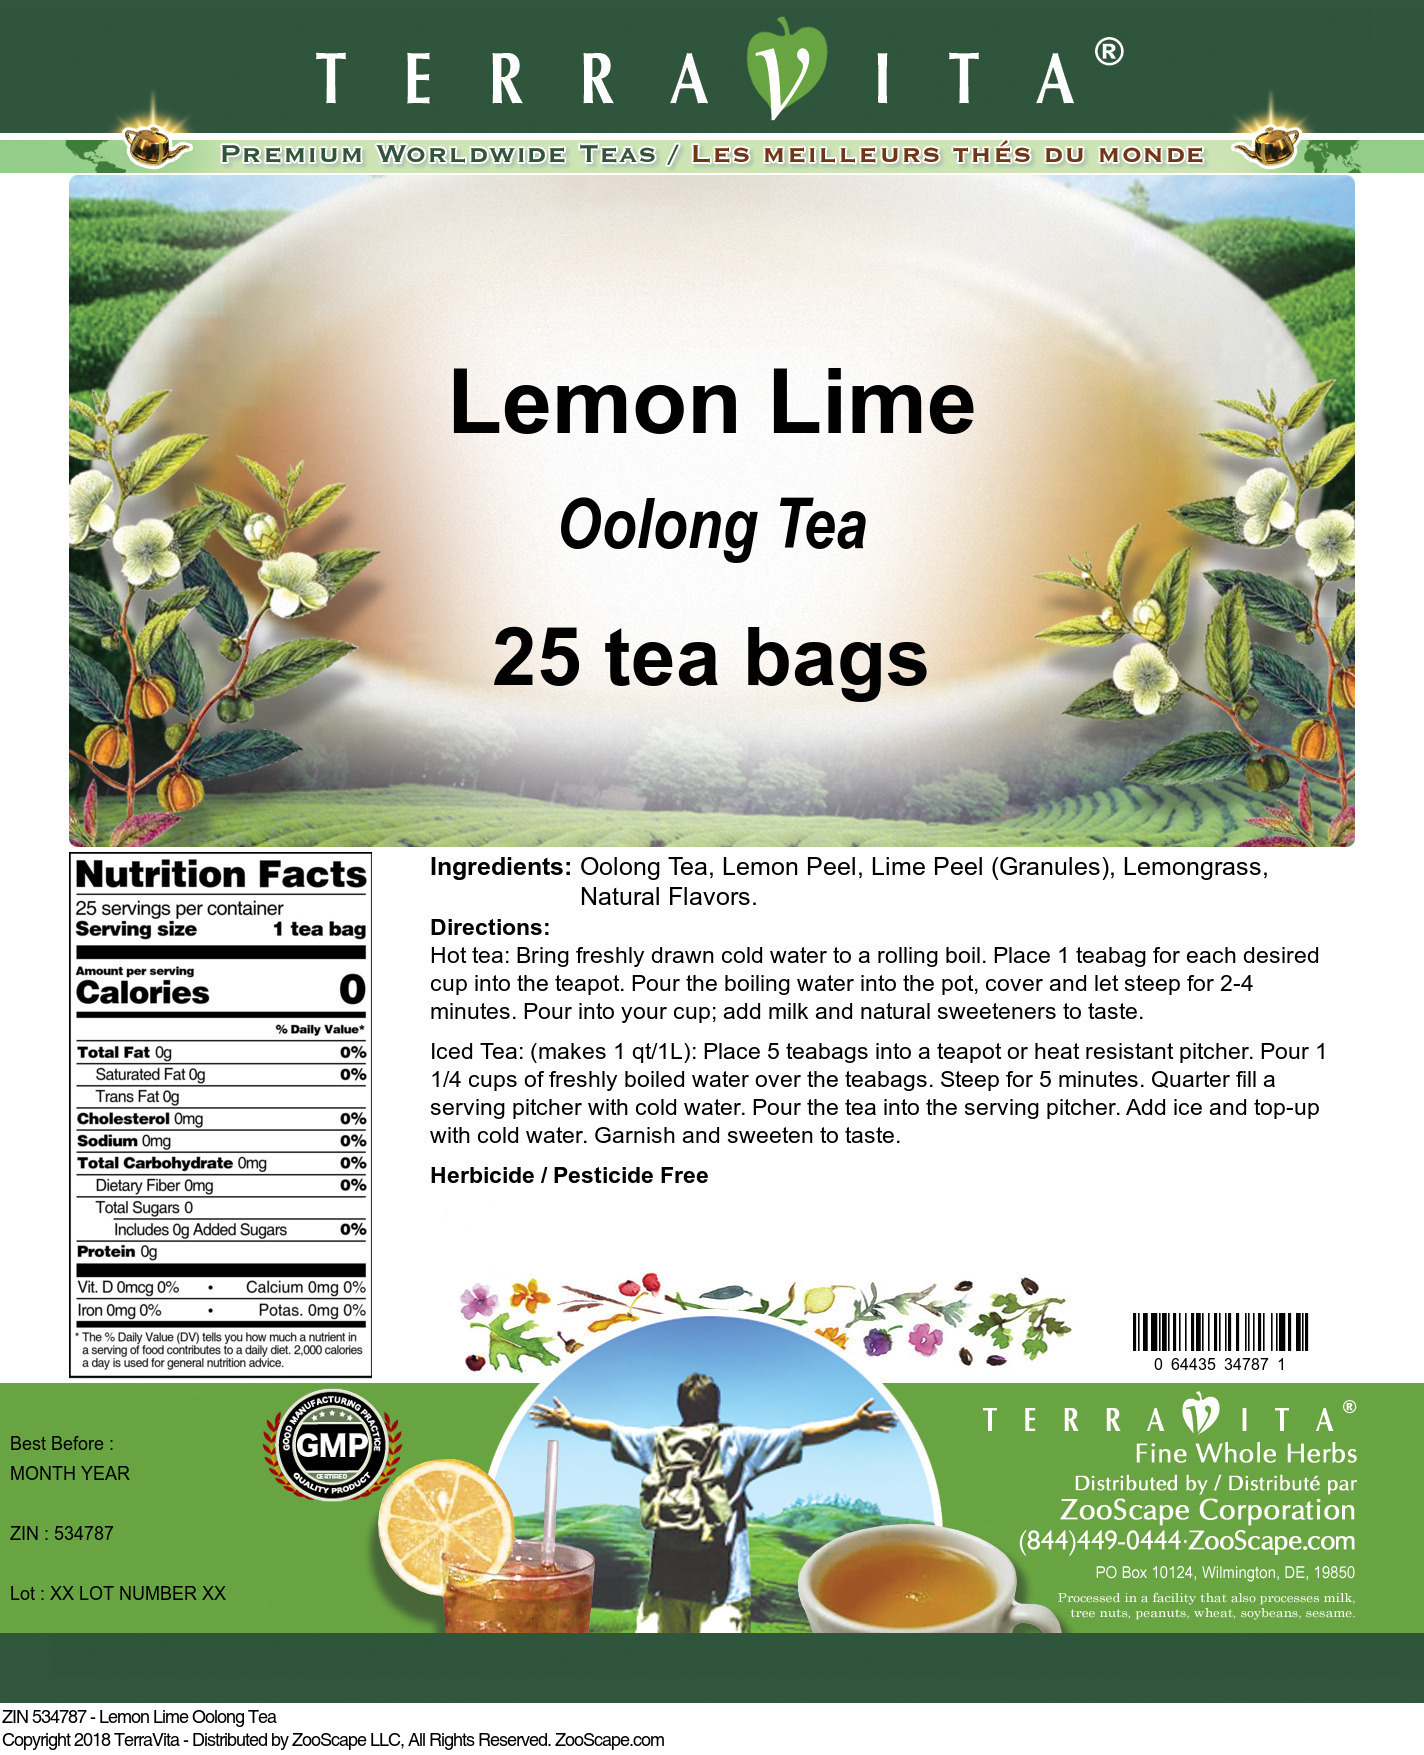 Lemon Lime Oolong Tea - Label